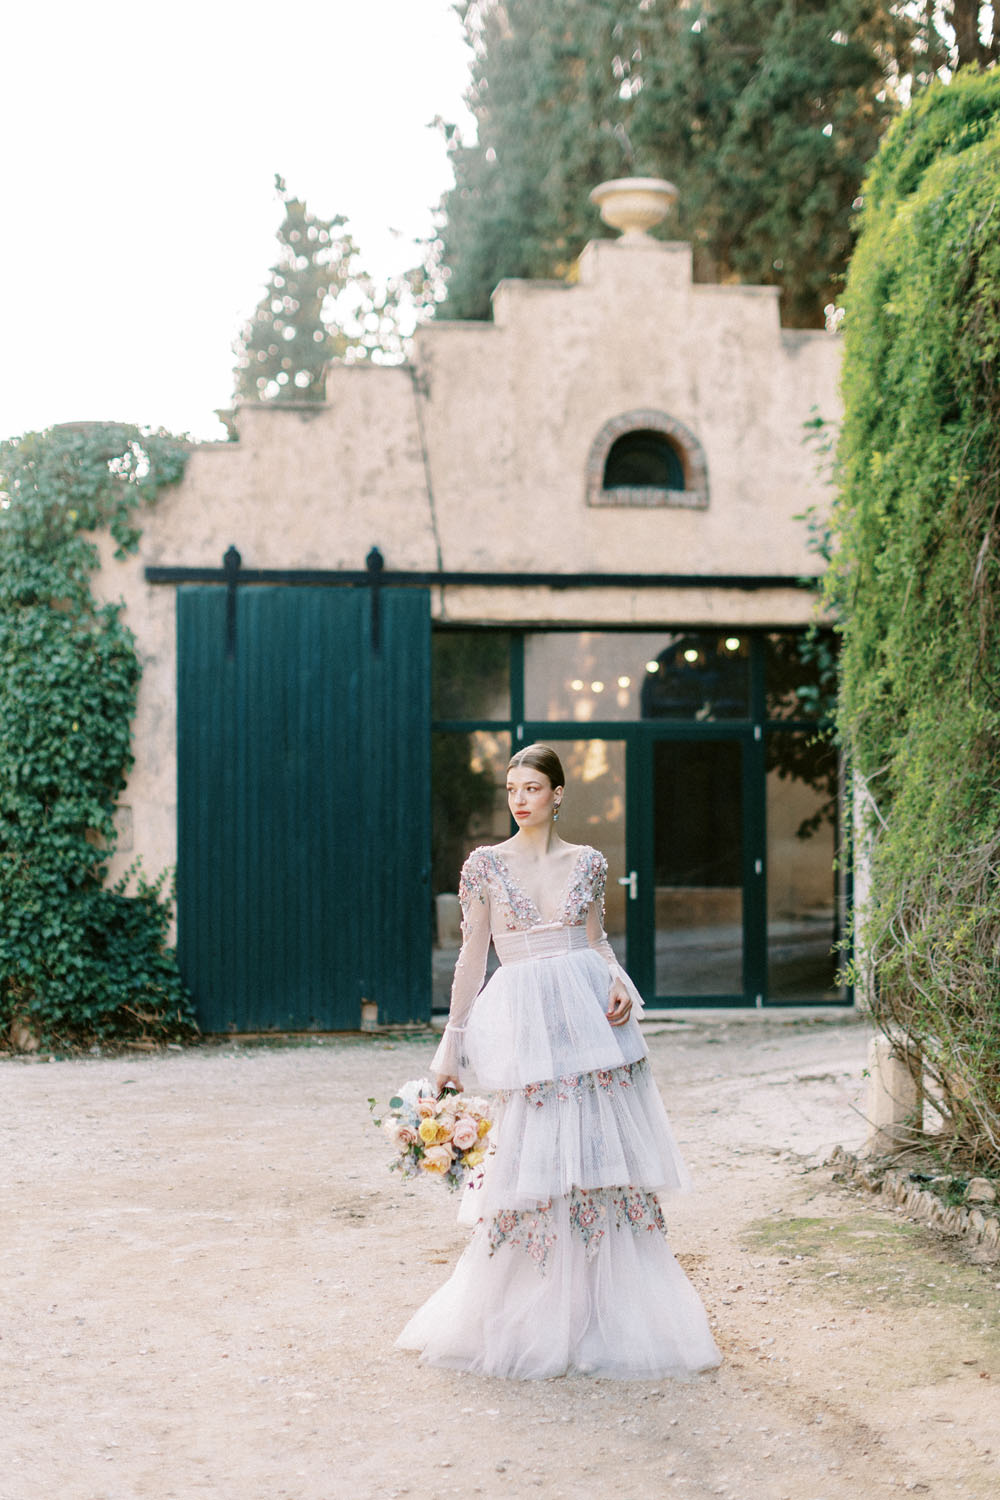 Embellished wedding dress at Greek castle wedding